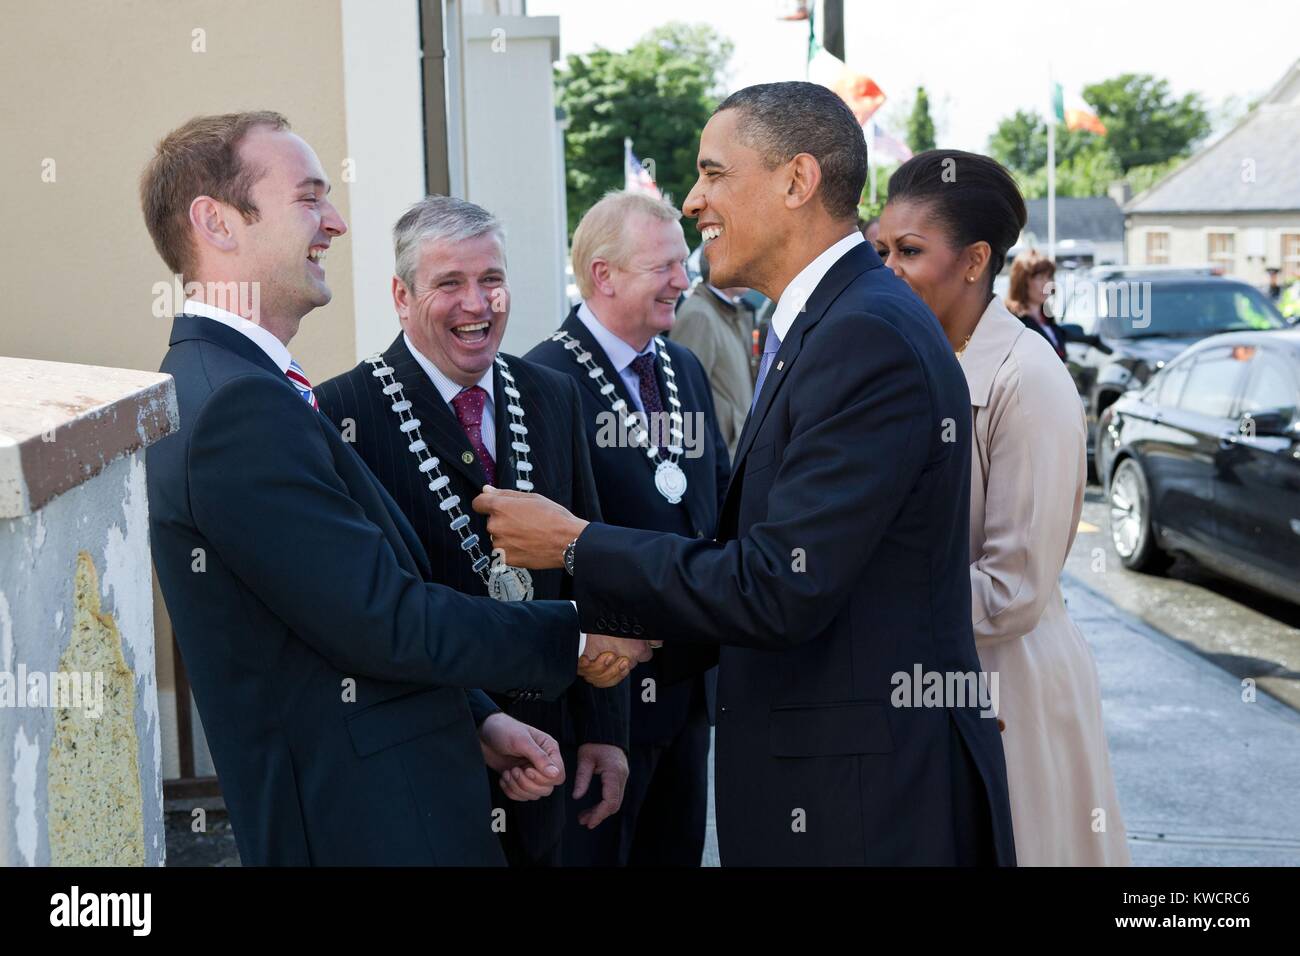 Us-Präsident Barack Obama begrüßt seinen irischen Cousin Henry Healy, in Moneygall, Irland. Lokale Beamte Ratgeber Danny Owens und Ratgeber John Kennedy tragen ihre Ketten von Office. 23. Mai 2011. (BSLOC 2015 3 170) Stockfoto